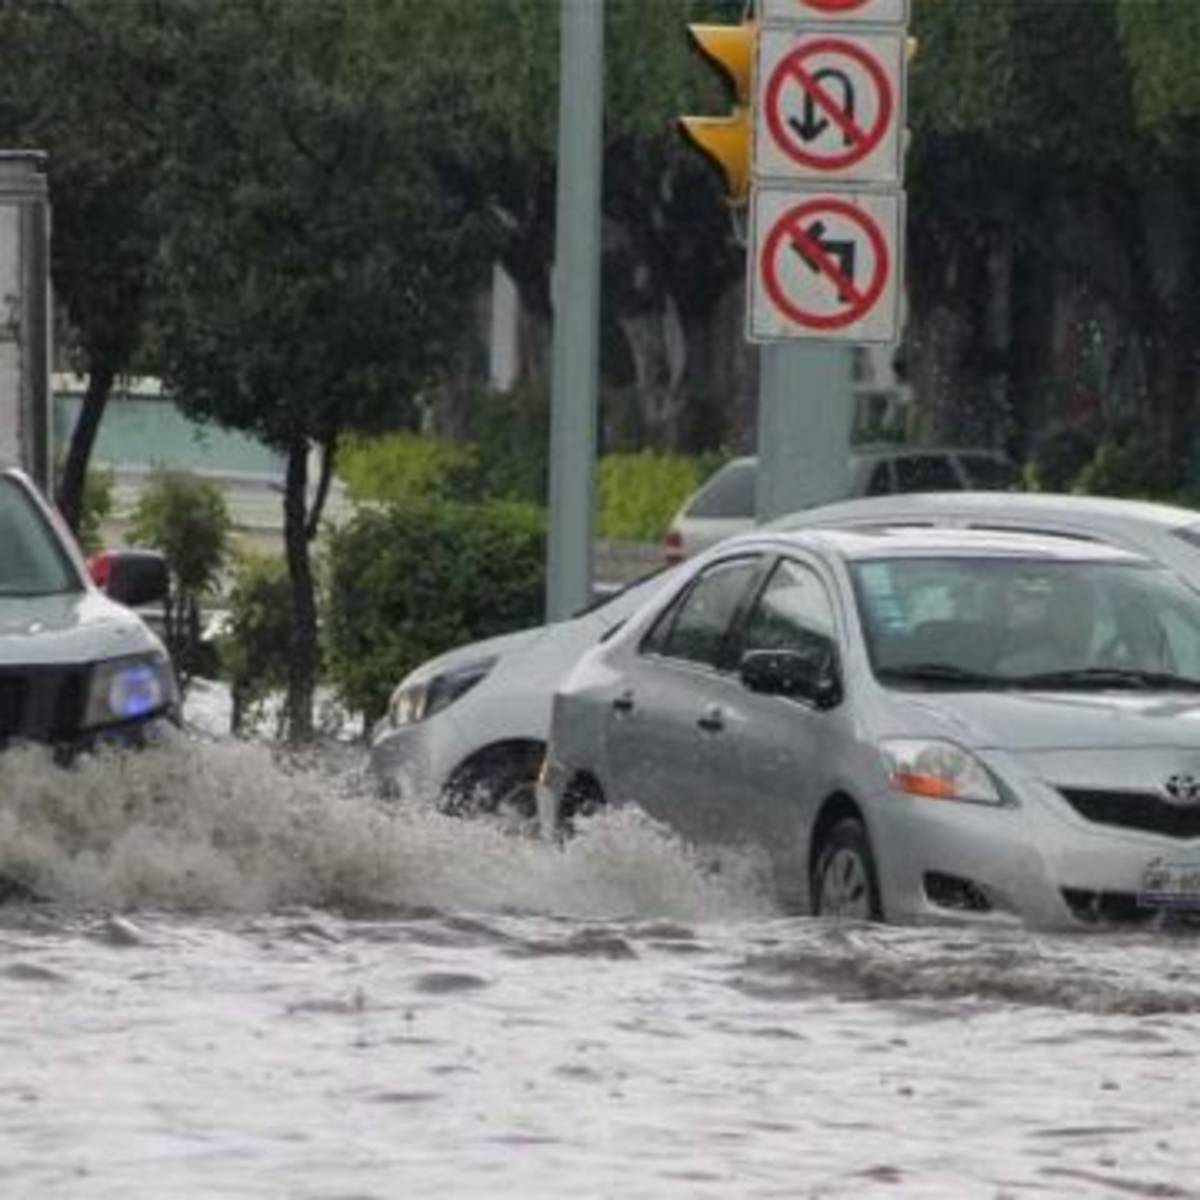 Guanajuato empezará a sentir los efectos del huracán “Grace” desde este sábado con alta probabilidad de lluvia, dio a conocer el Servicio Meteorológico Nacional (SMN).